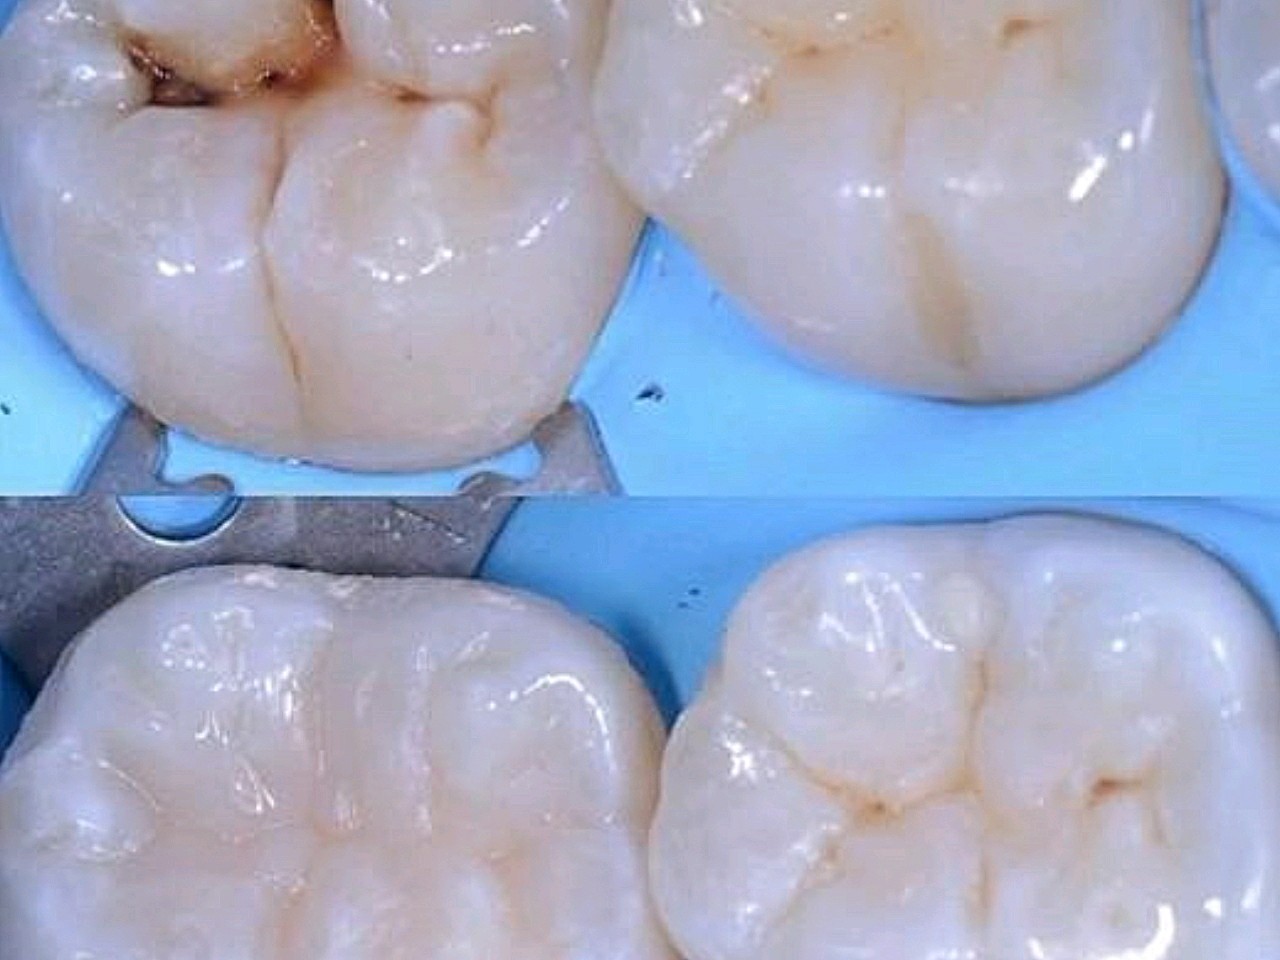 下面再分别说说补完这两类材料后的注意补牙复合树脂补牙补牙图片补牙